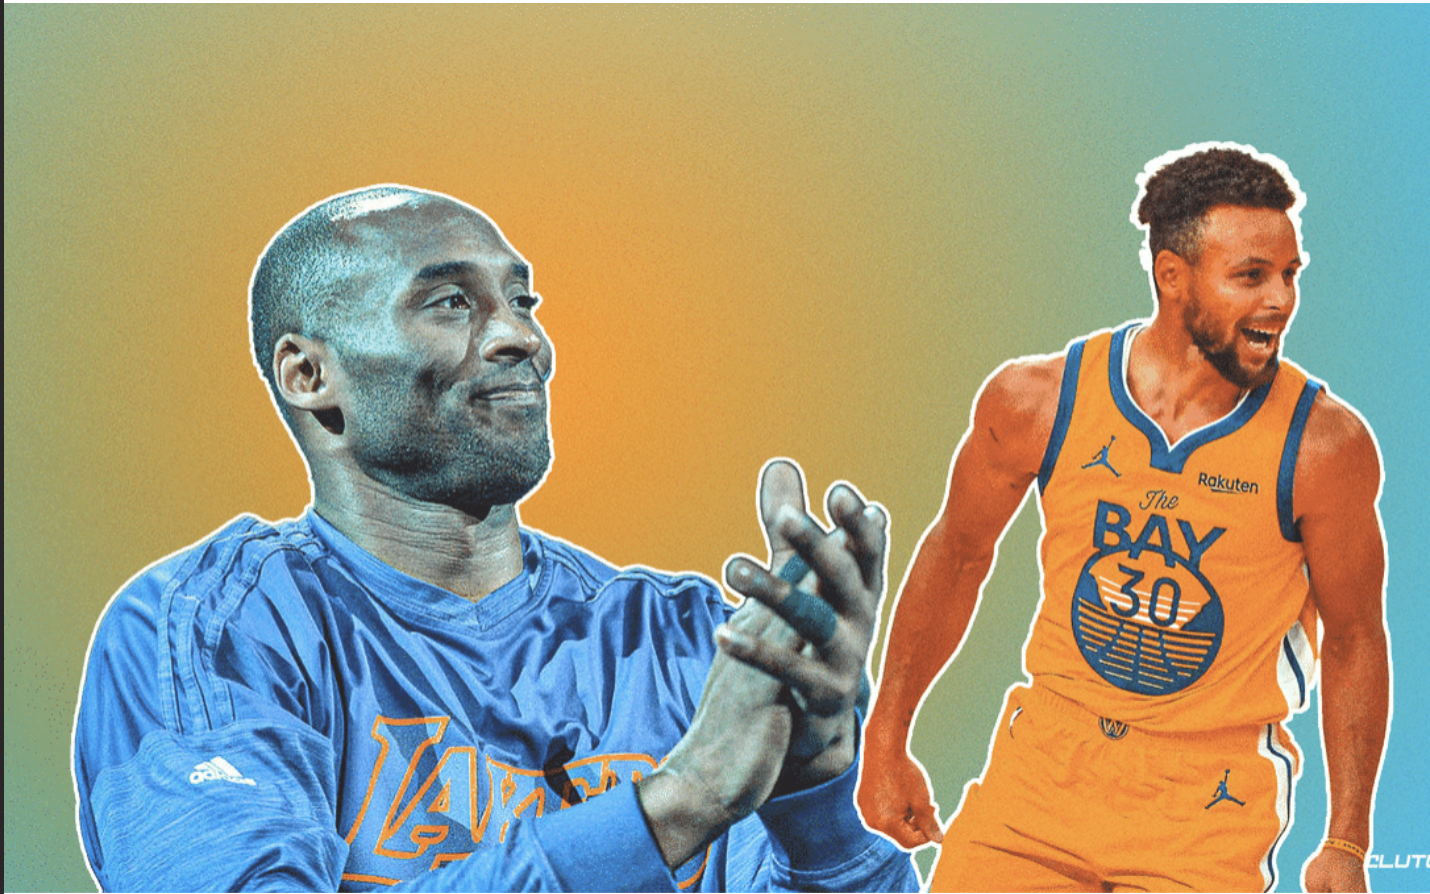 Kéo dài chuỗi trận thăng hoa, Stephen Curry sánh vai cùng huyền thoại Kobe Bryant